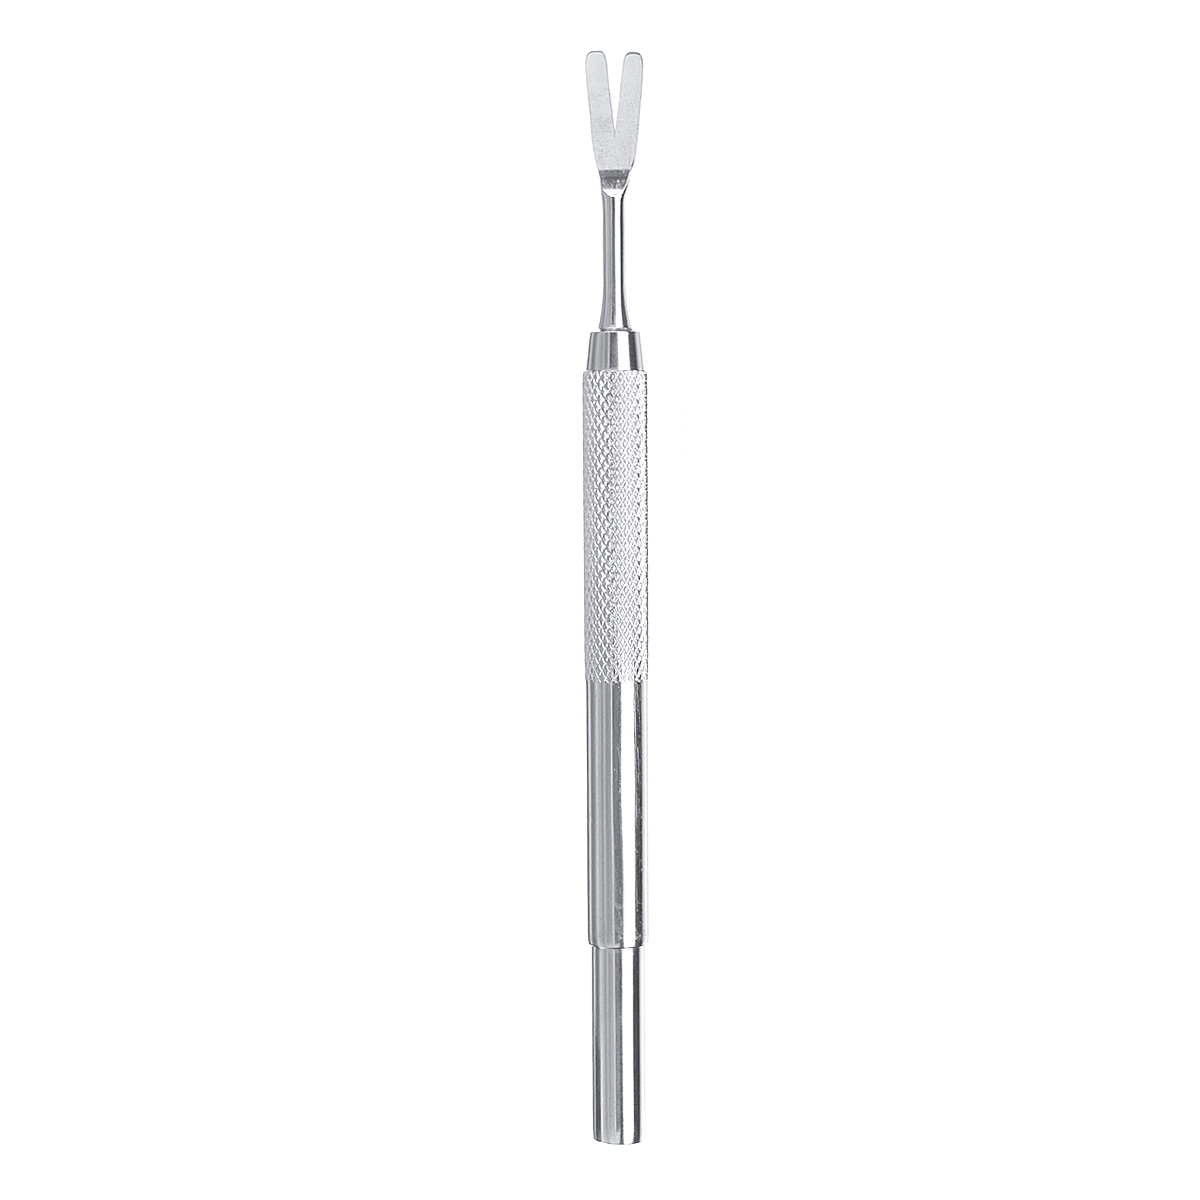 3Pcs-Stainless-Steel-Tweezers-Set-Lice-Remover-Grooming-Tweezer-Tools-1311461